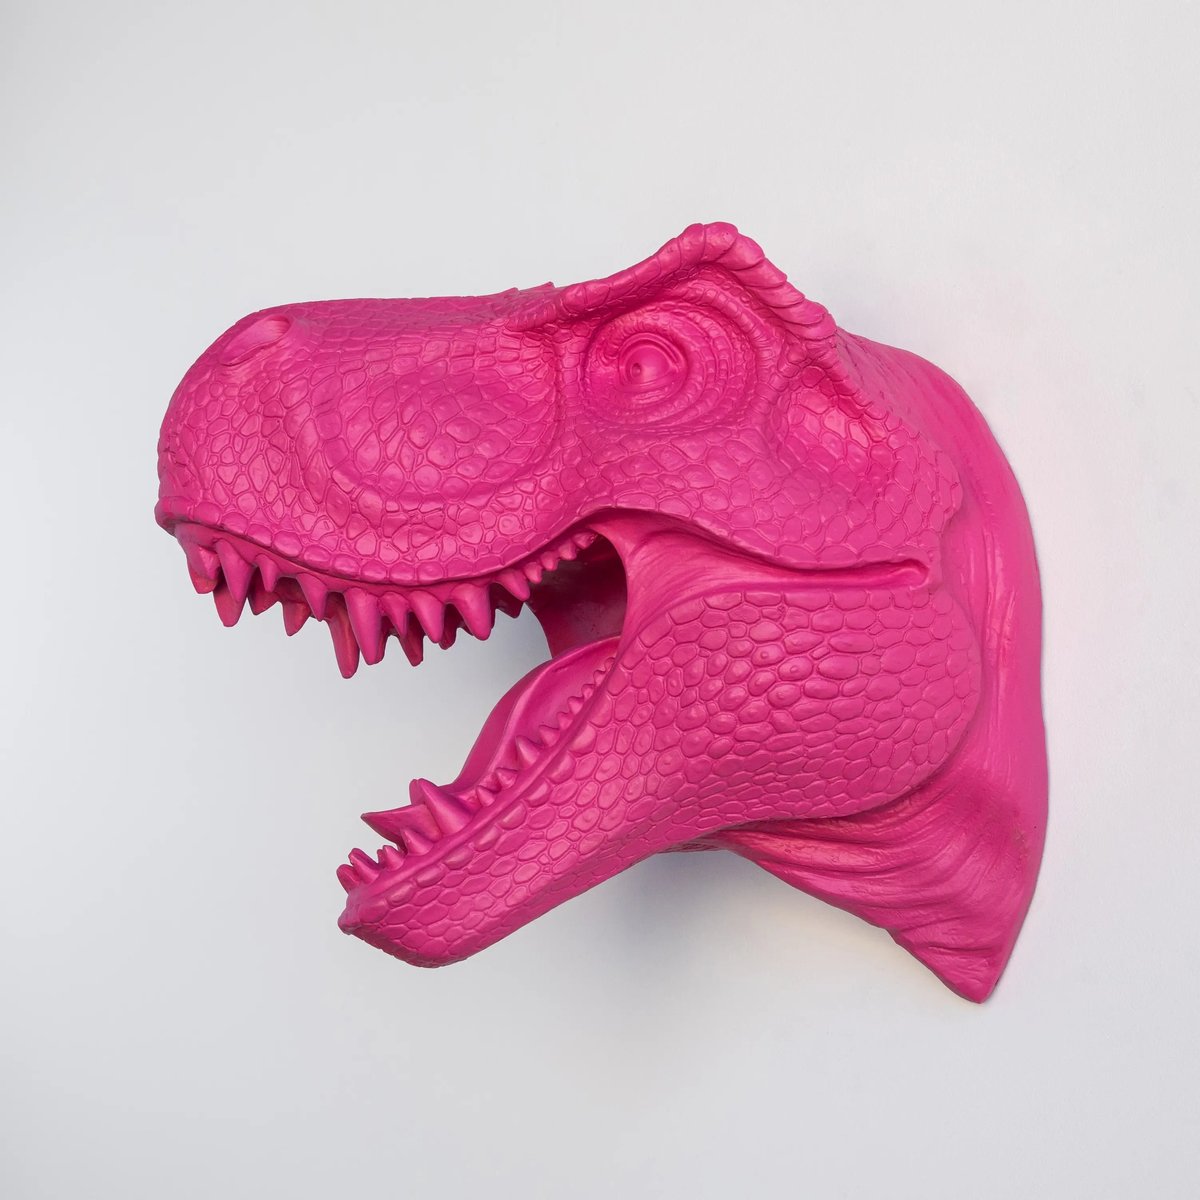 T-Rex Saurierkopf Wanddeko, Kunstharz pink